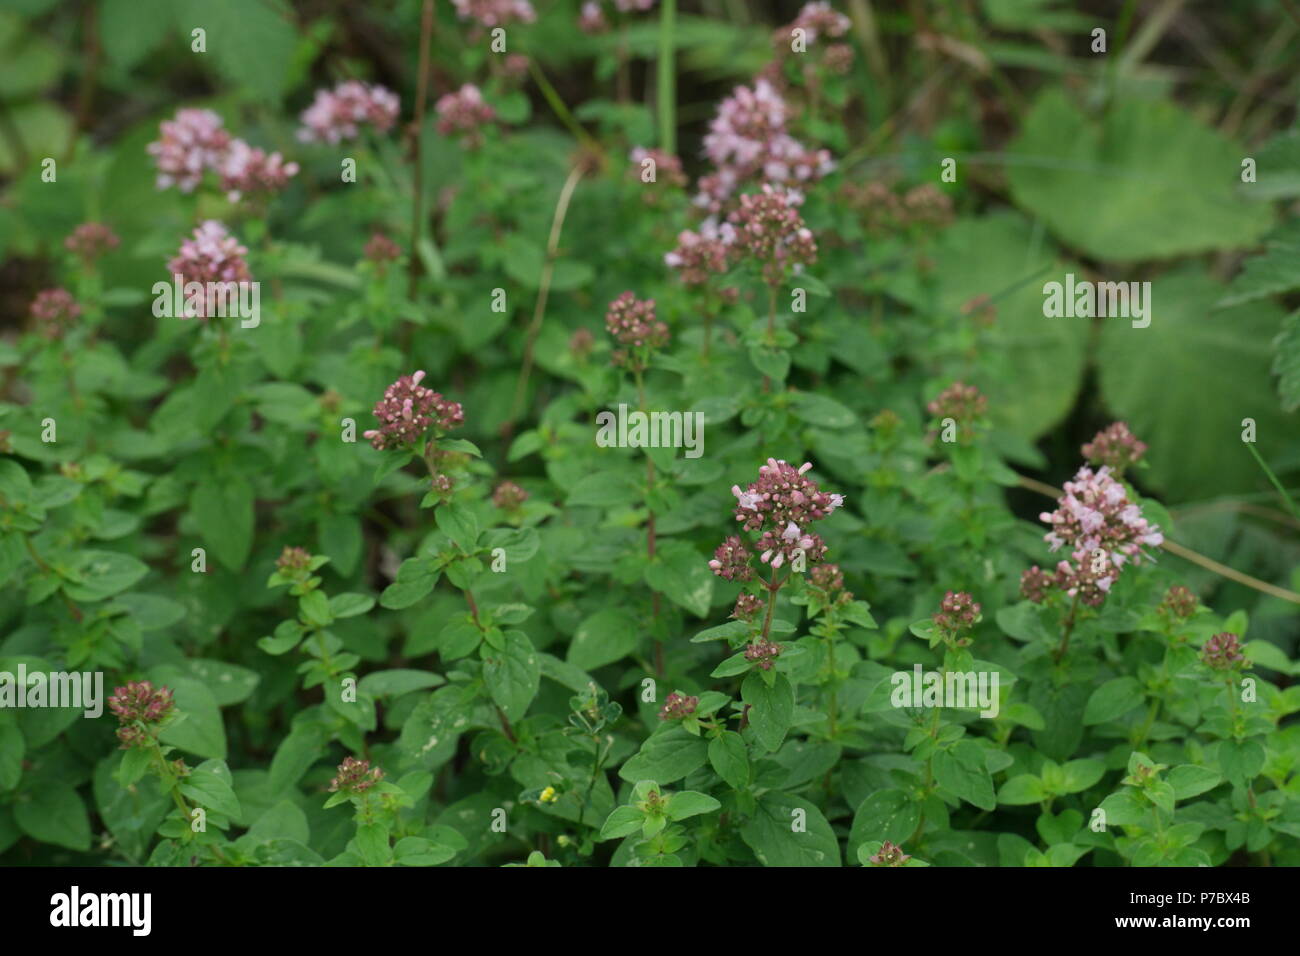 Origanum vulgare (Oregano) (wild marjoram) (origan commun) Stock Photo